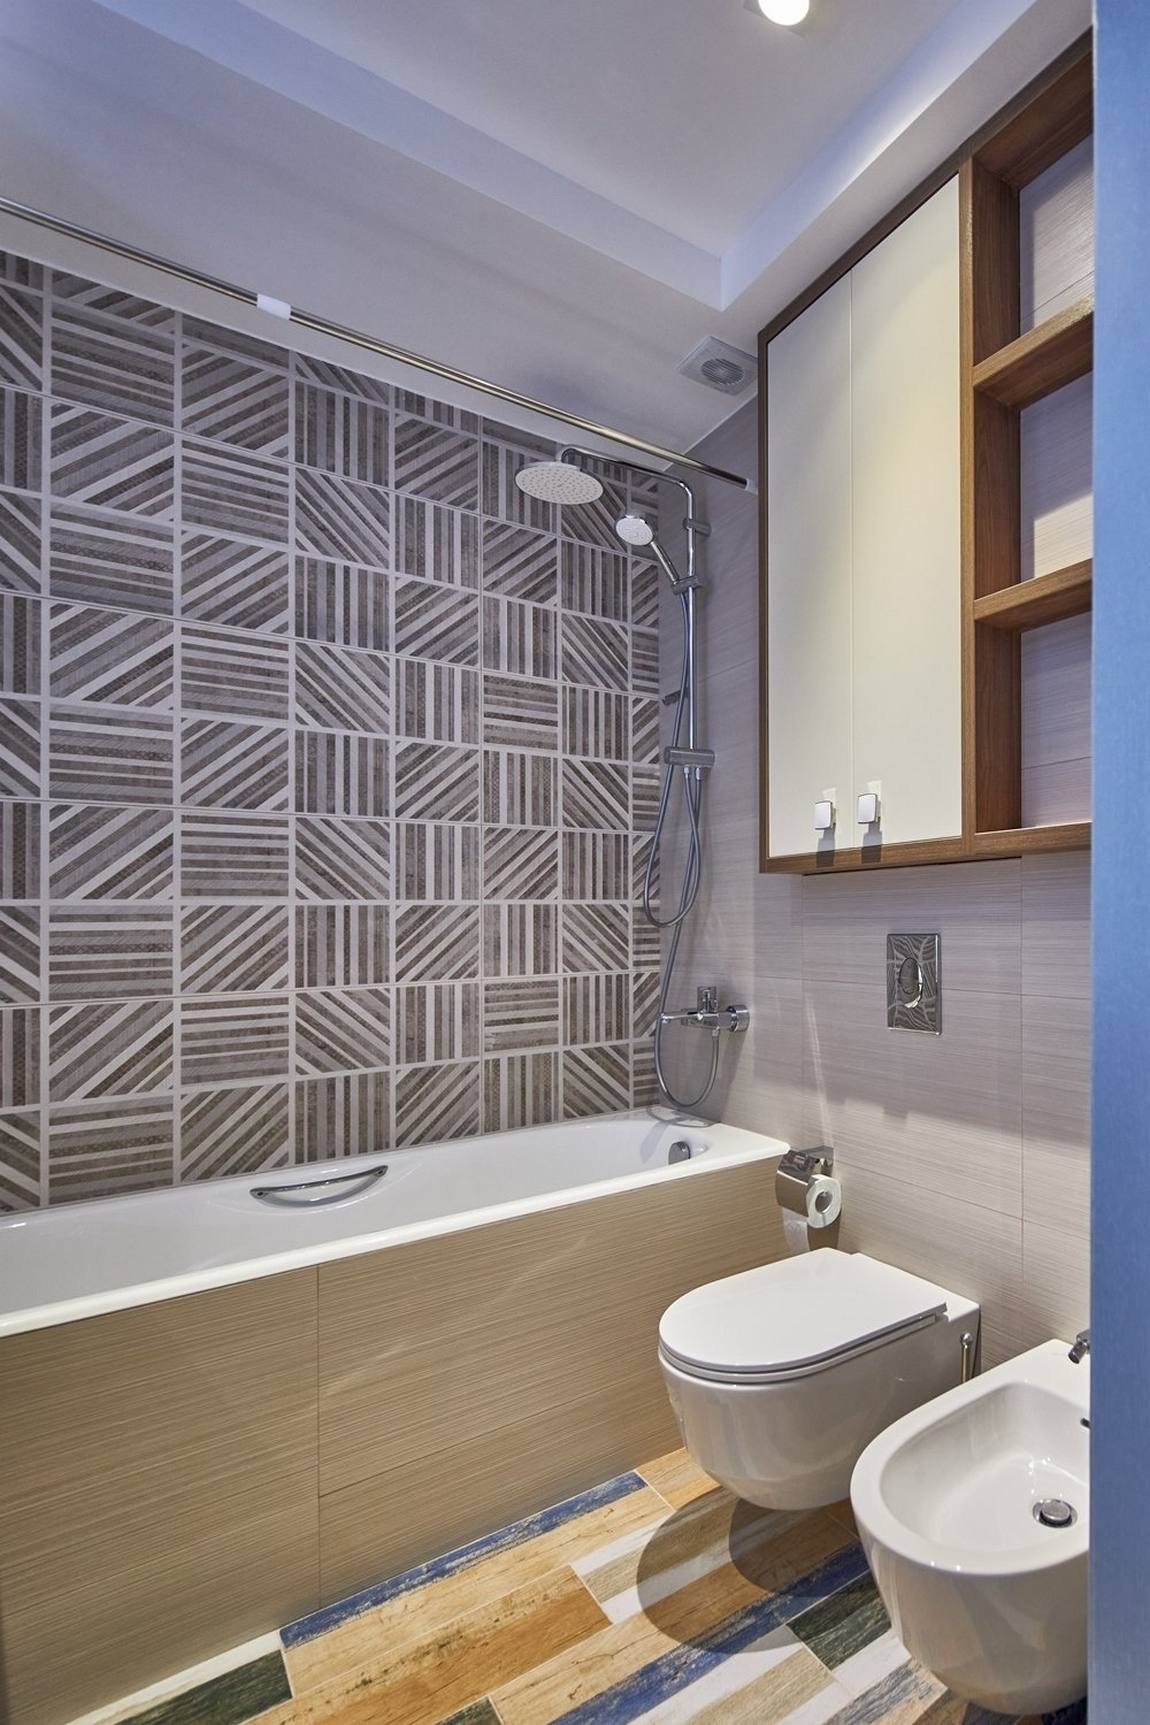 Sàn phòng tắm lát gạch giả gỗ nhiều màu sắc nổi bật, trên tường tích hợp tủ kệ lưu trữ và những viên gạch họa tiết hình học xen kẽ trên tường bồn tắm. Toilet gắn tường cũng giúp cho không gian nhỏ dễ vệ sinh chùi rửa hơn.